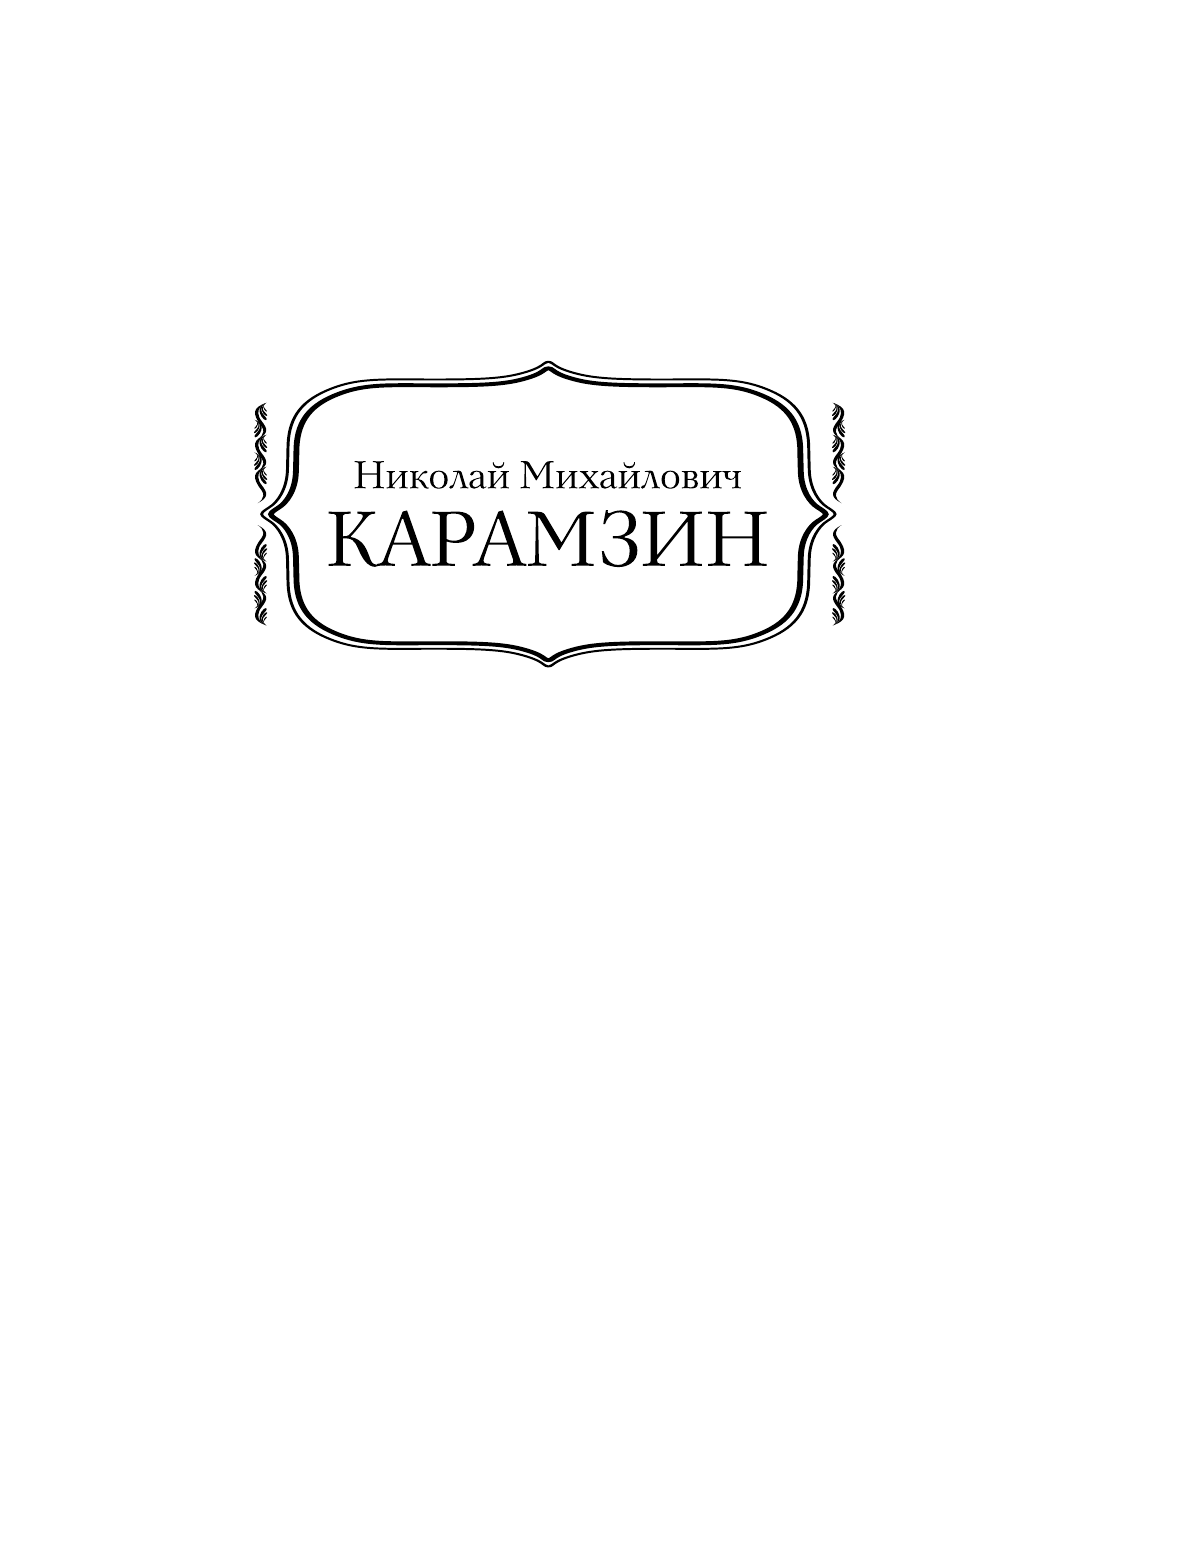 Карамзин Николай Михайлович История государства Российского - страница 2